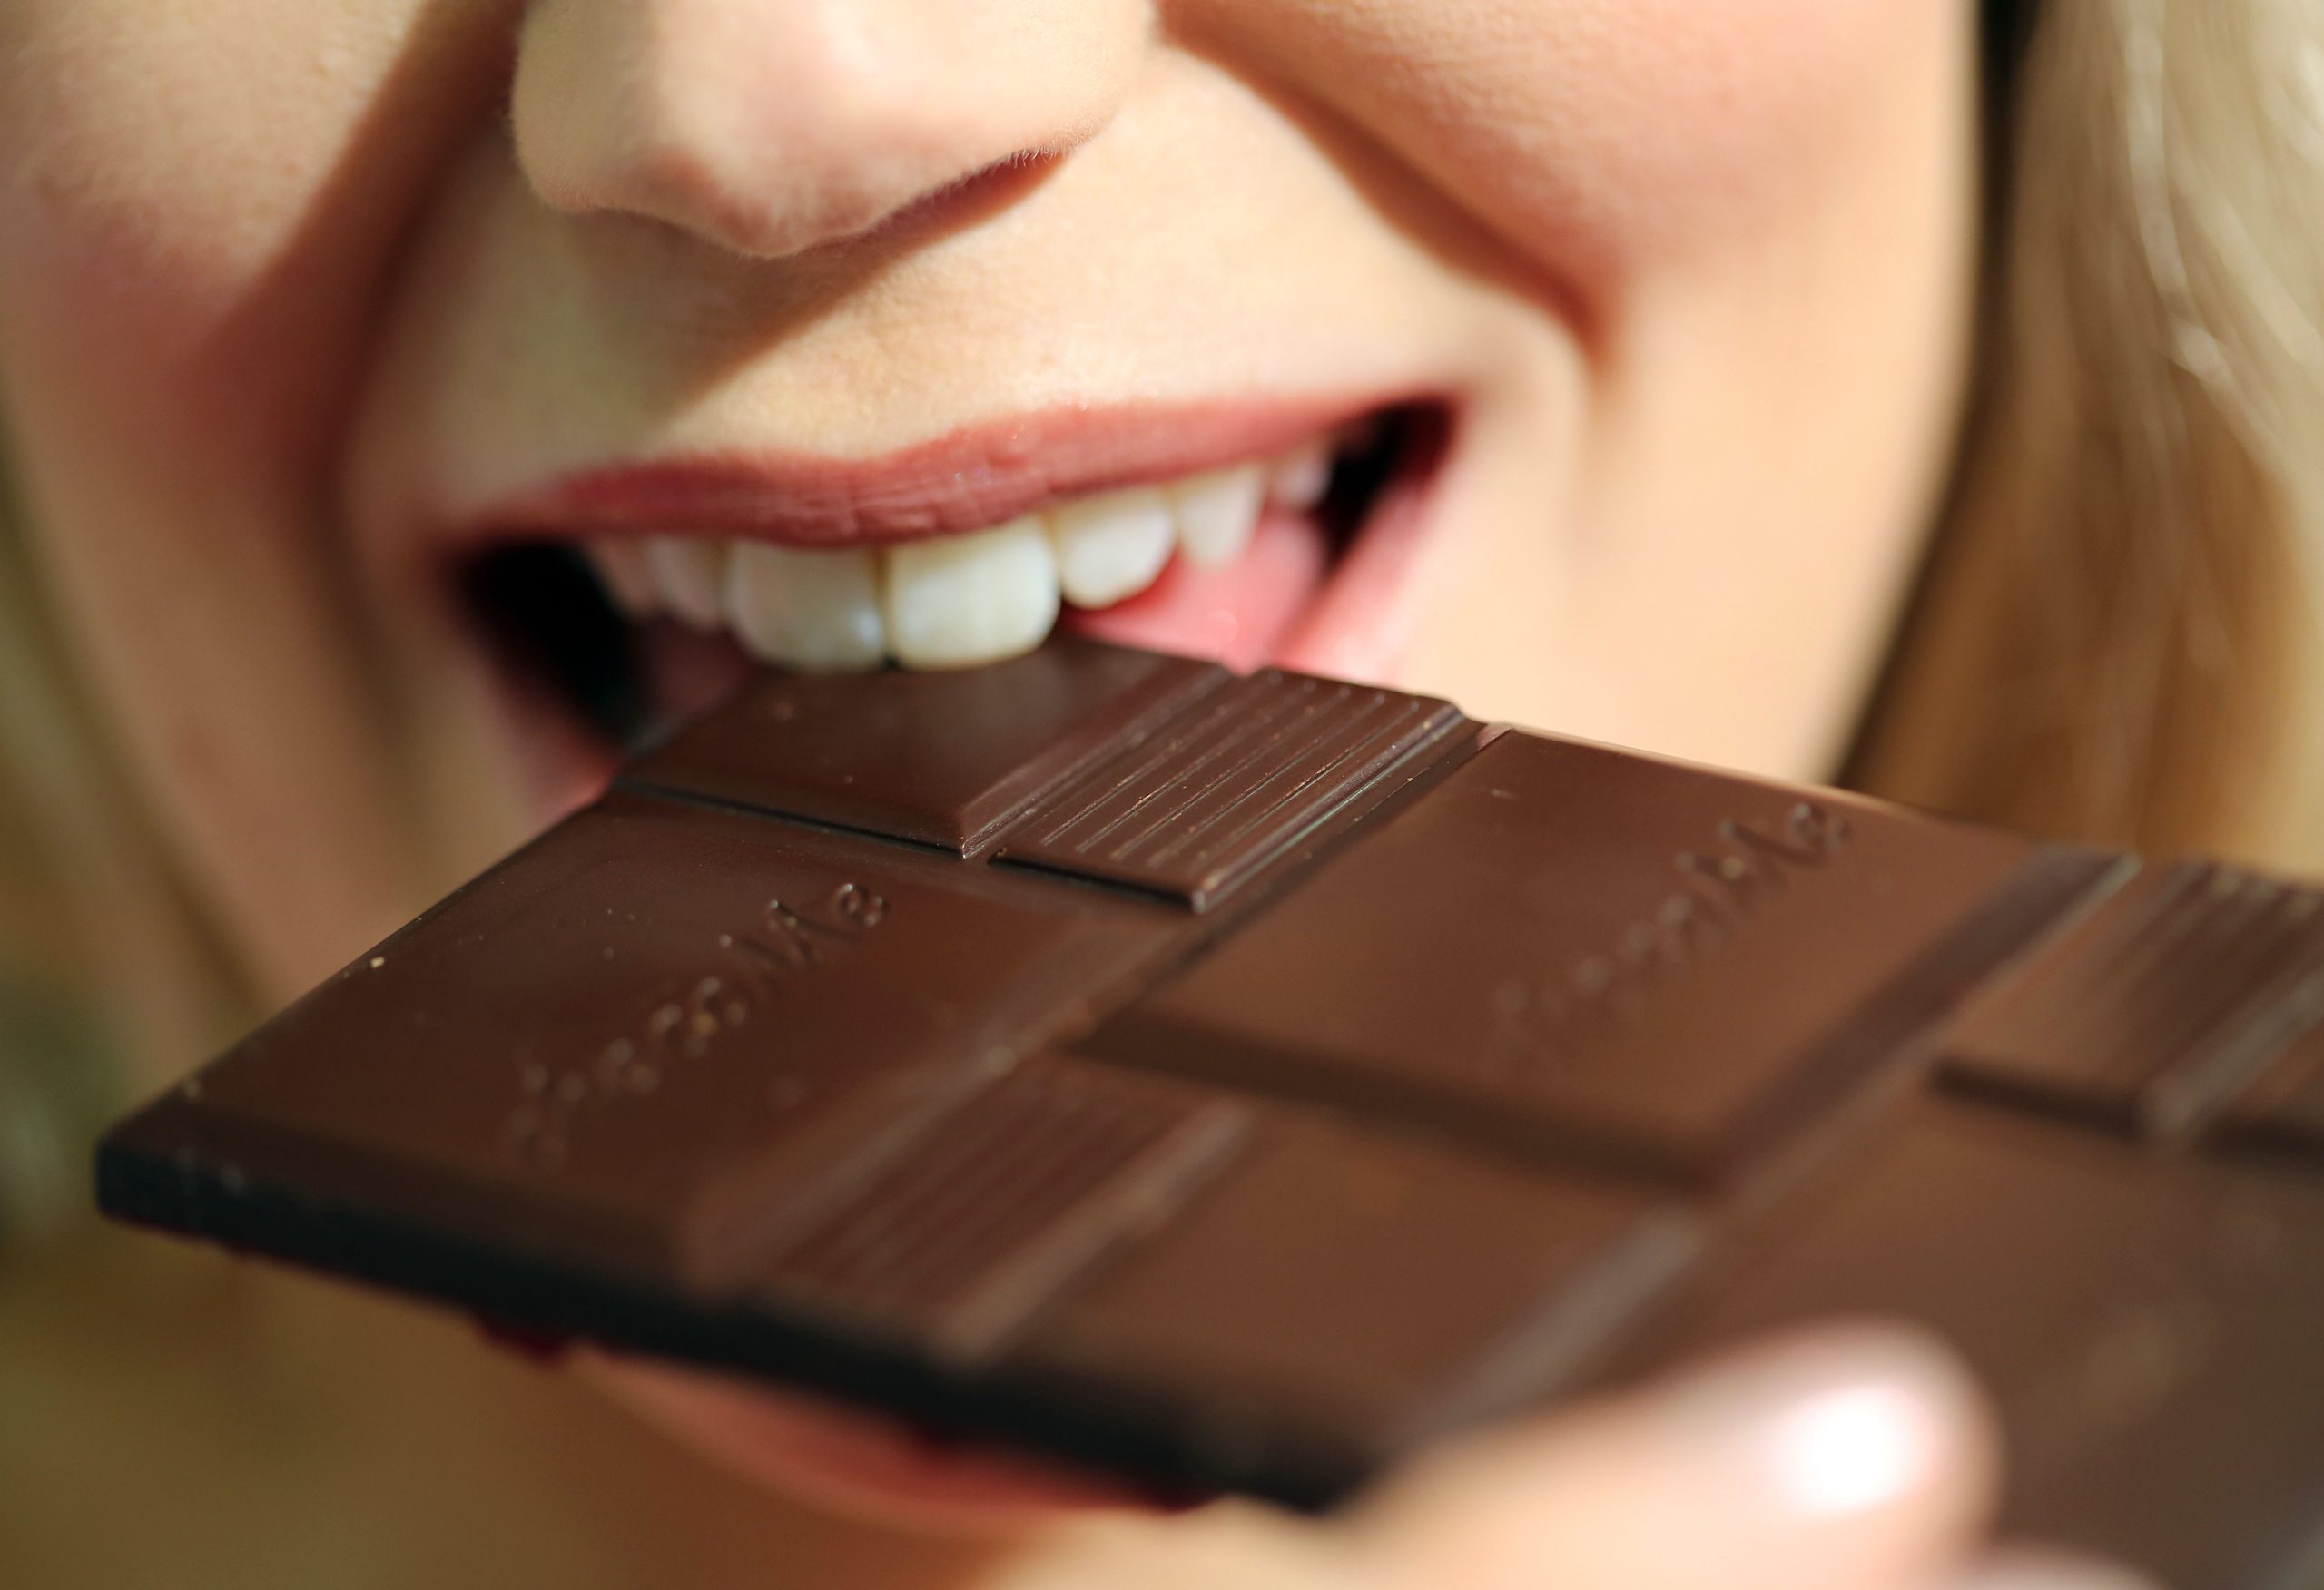 Milka, Kinder Schokolade oder ist Schokolade doch die Welche Merci? beliebteste